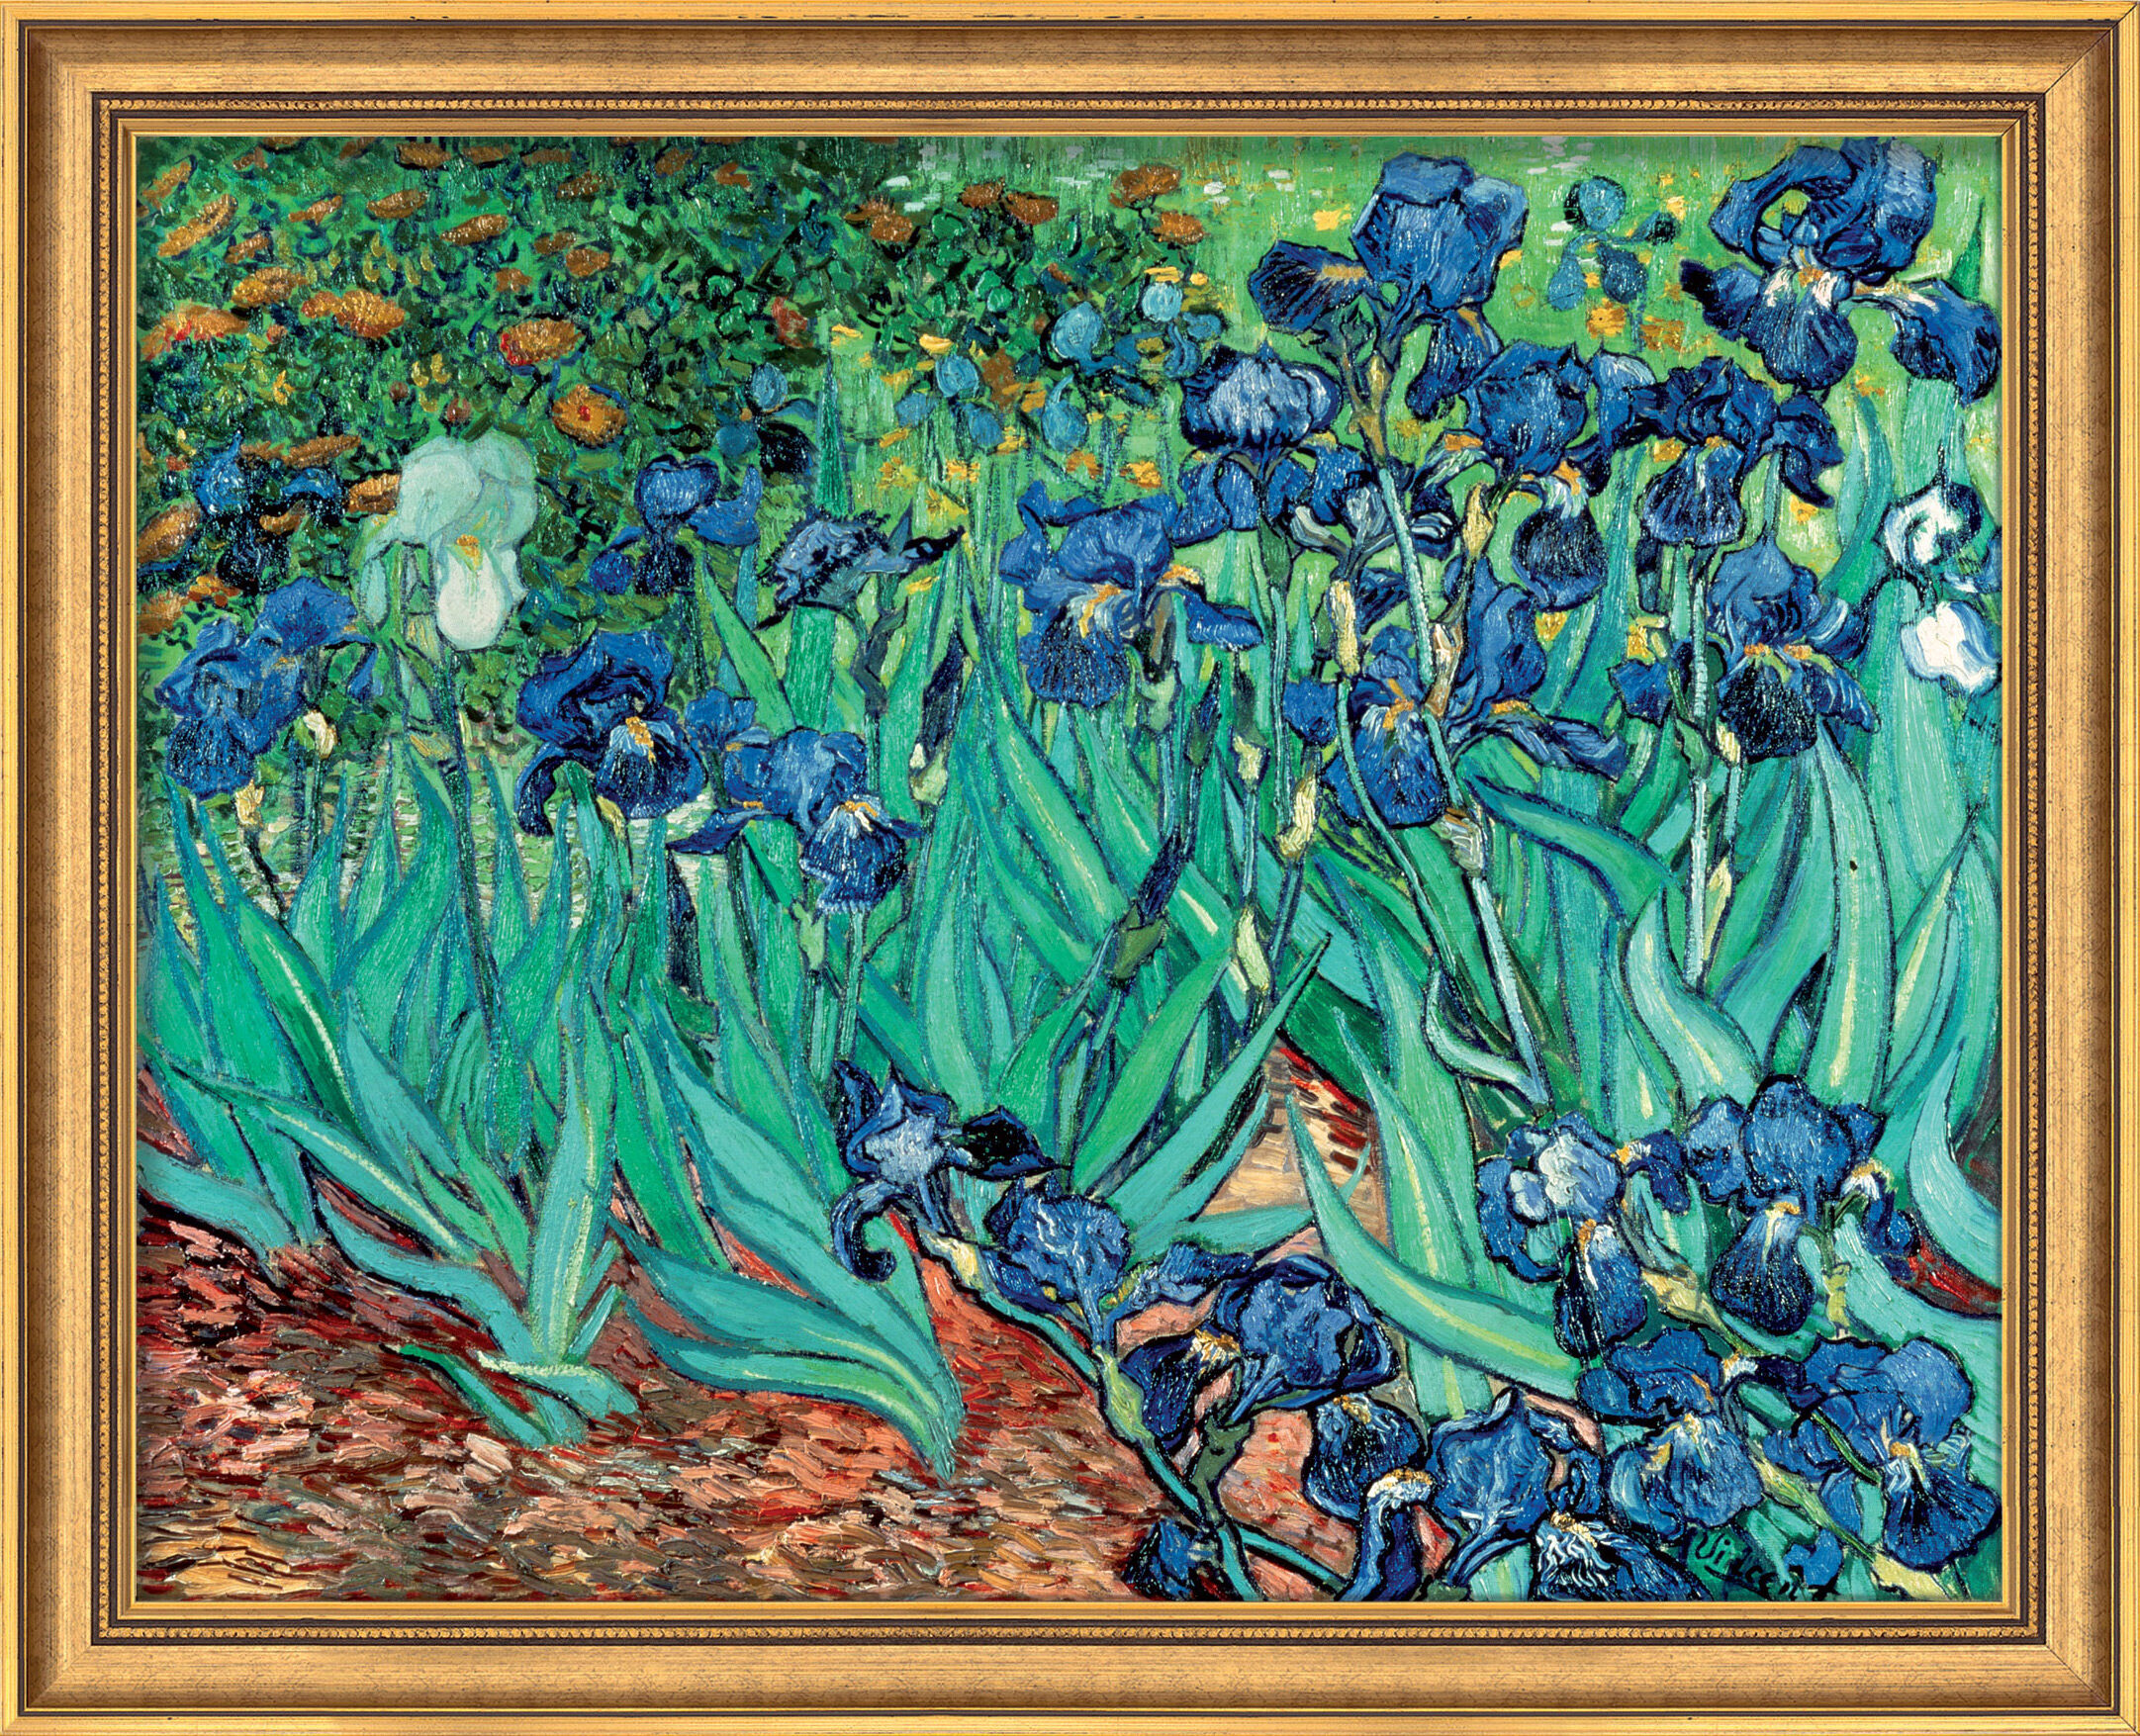 Billede "Iris" (1889), indrammet von Vincent van Gogh